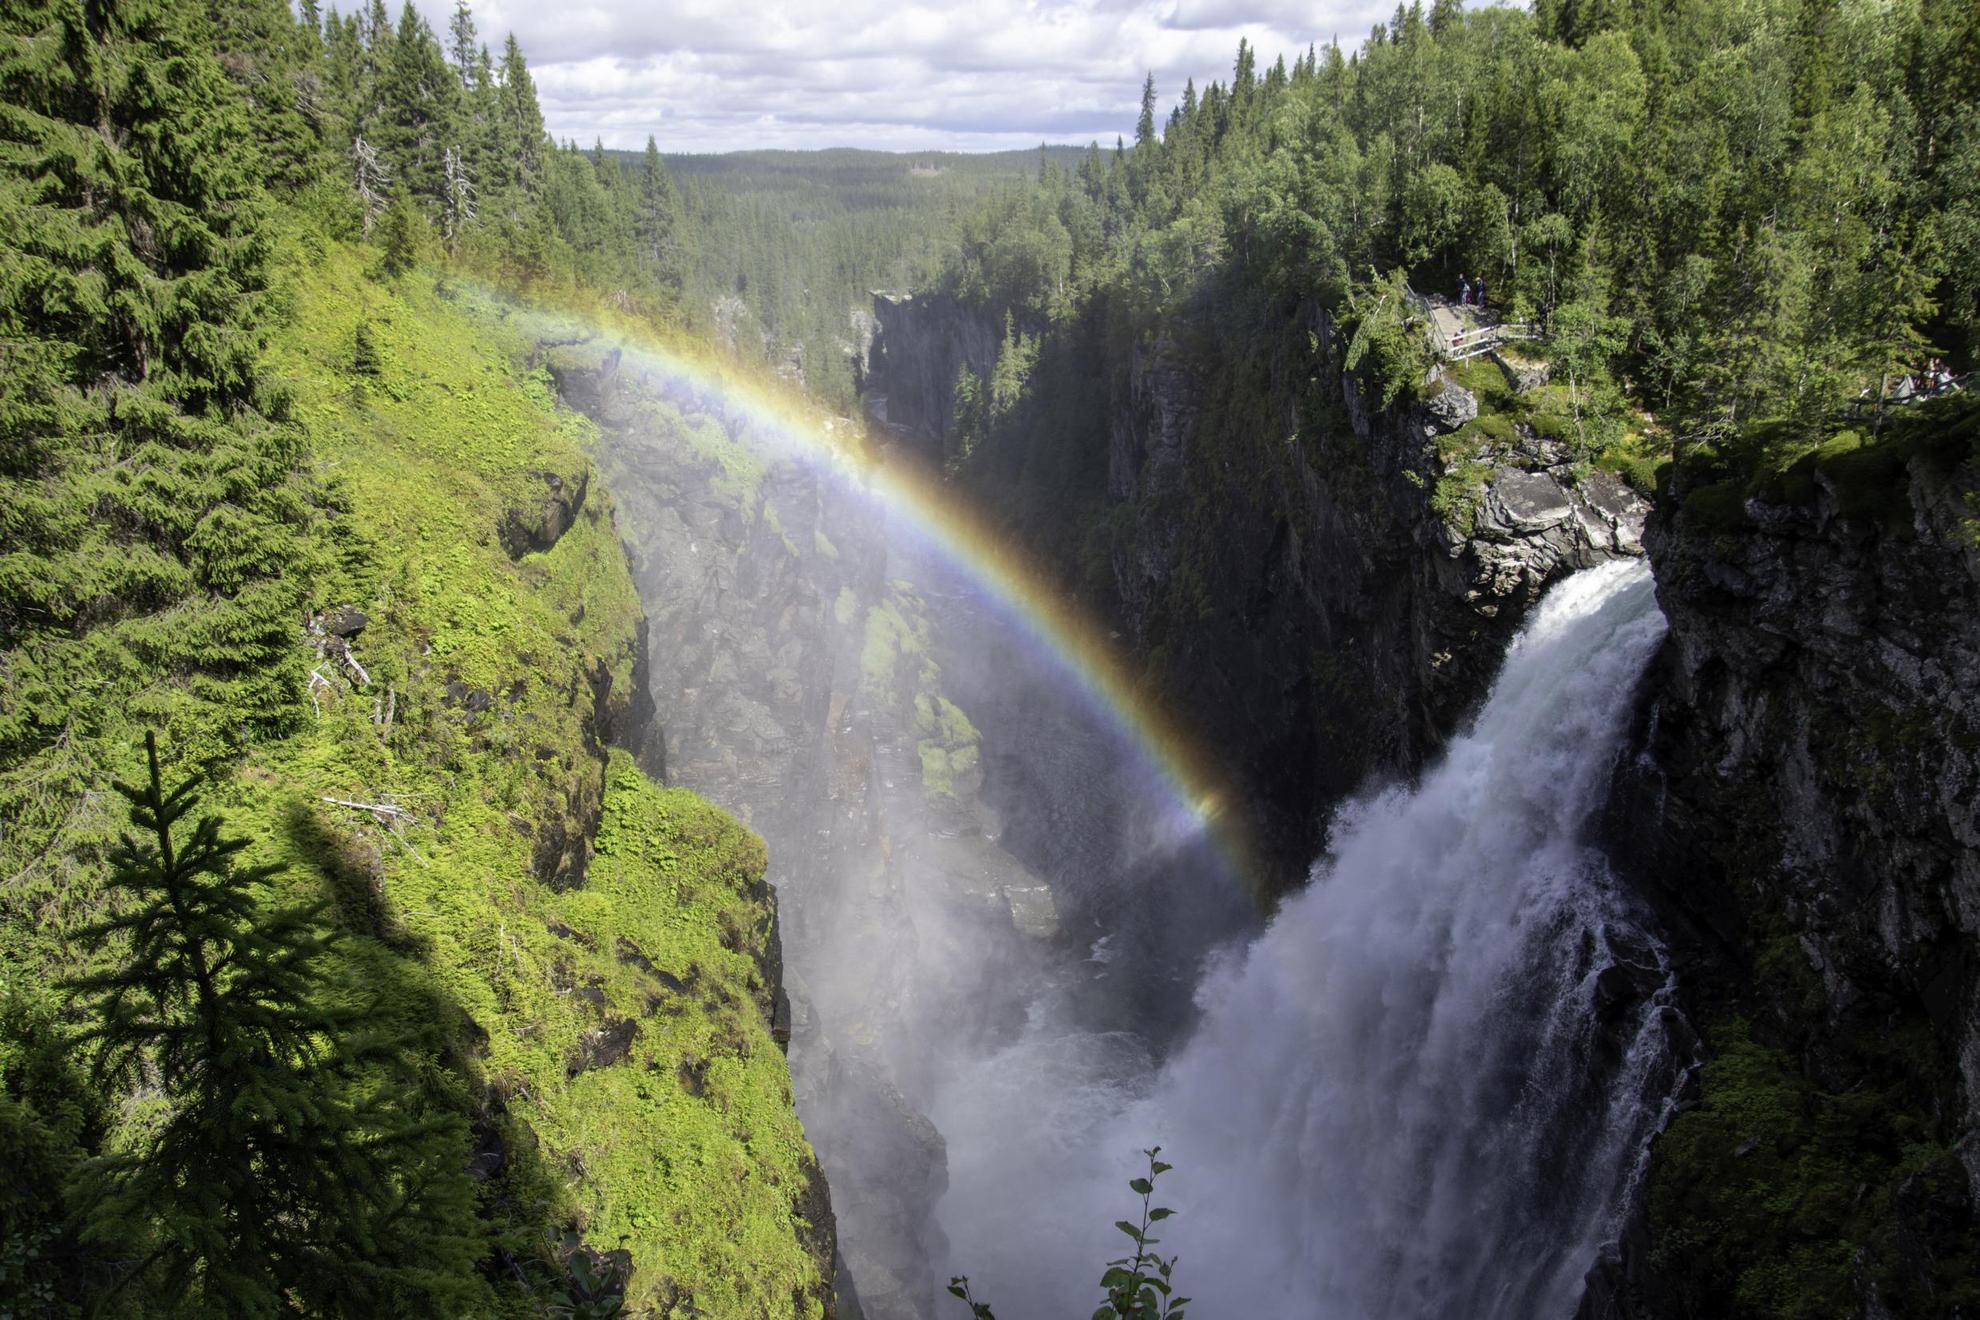 Une cascade se précipite du haut d'une falaise dans la forêt. On voit un arc-en-ciel dans la vapeur d'eau de la chute.